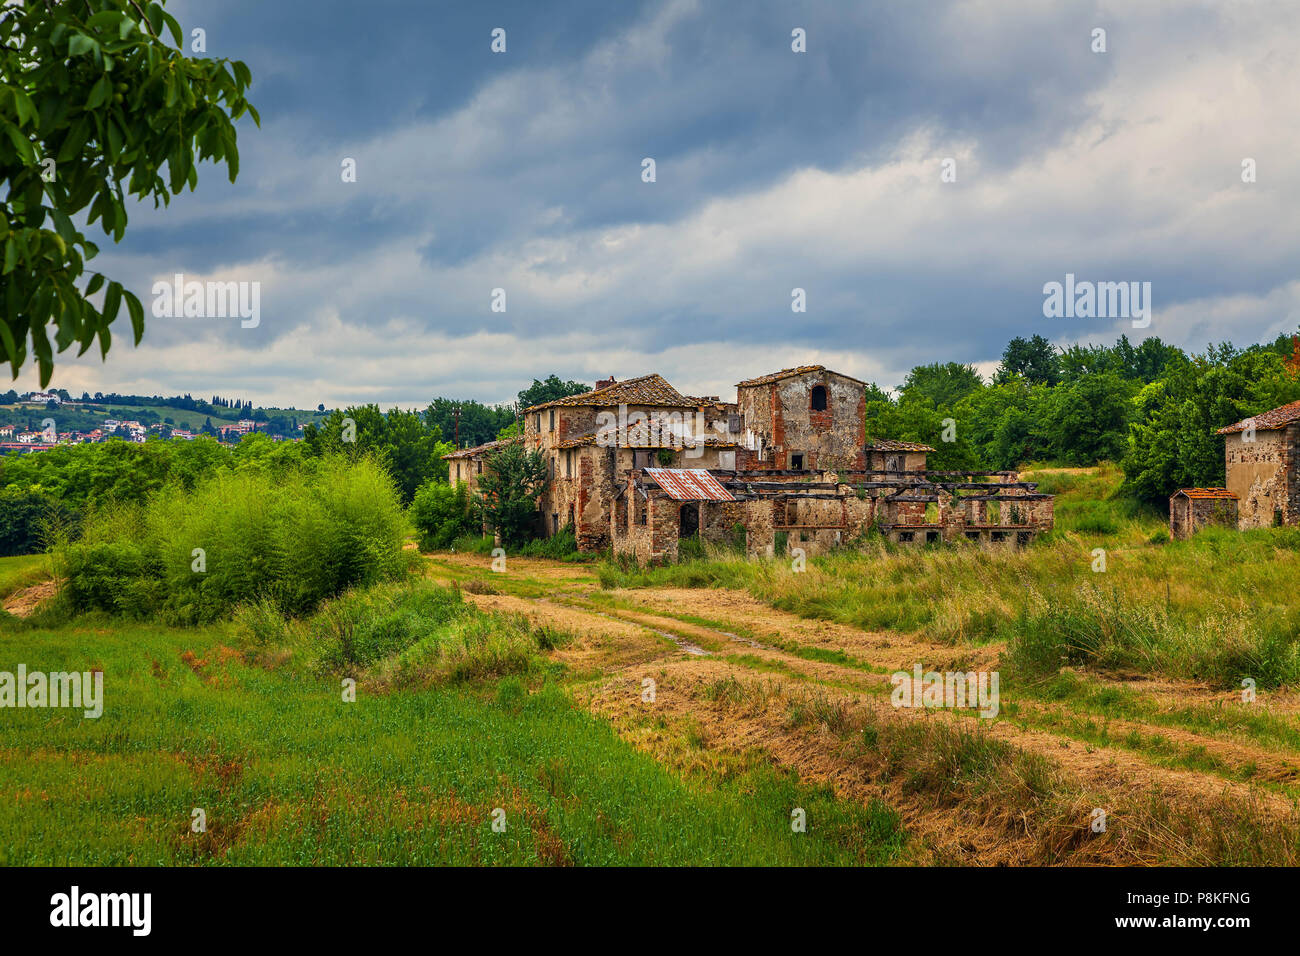 Abandoned village in Tuscany. Stock Photo